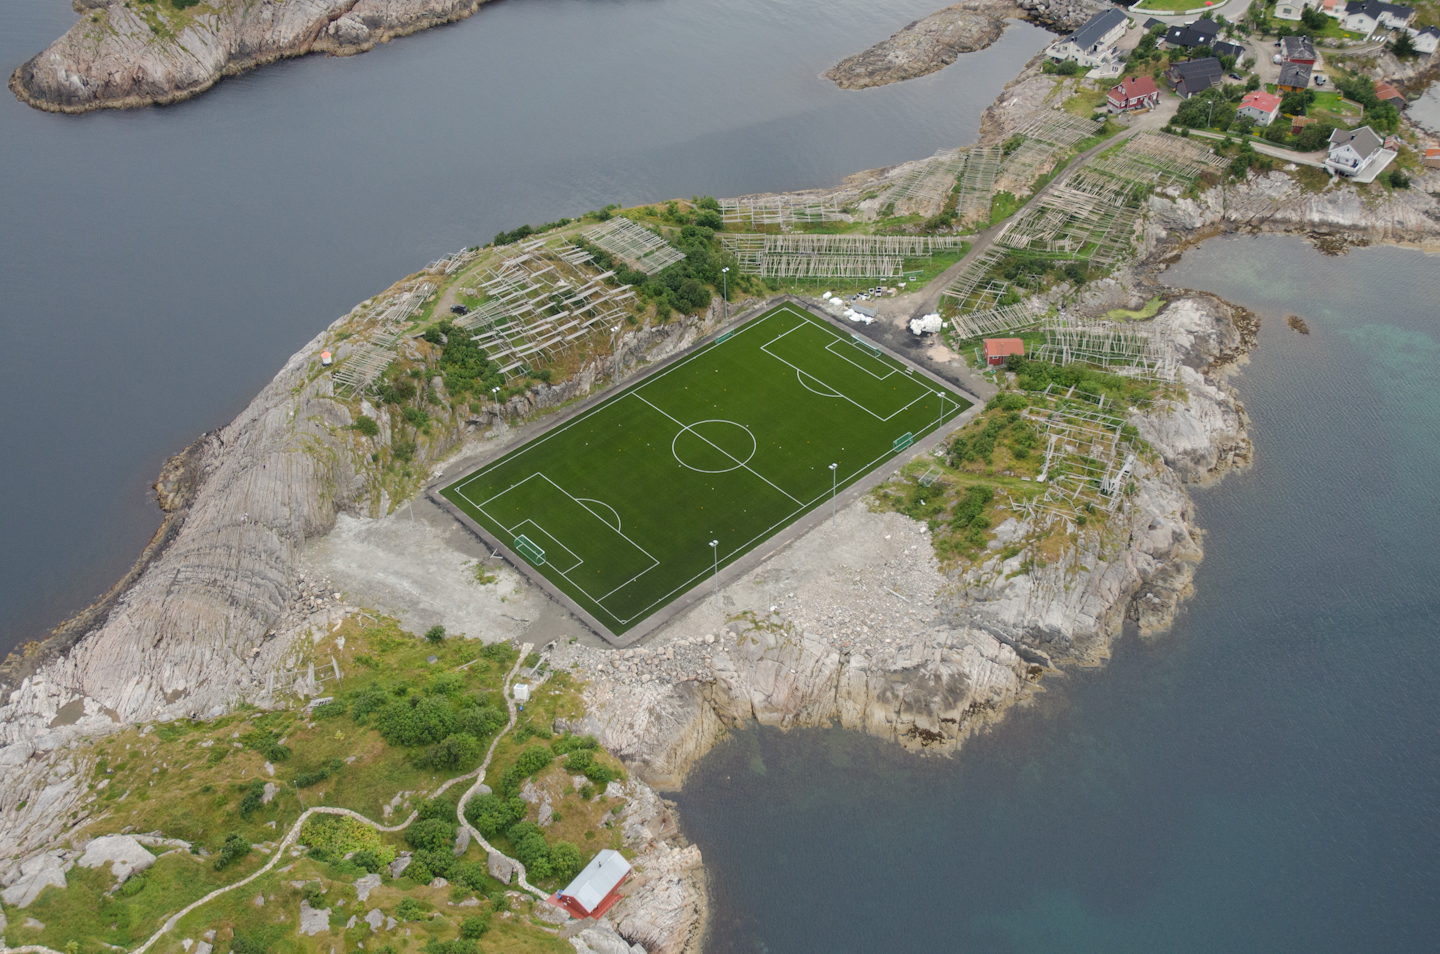 Стадион на острове. Стадион Хеннингсвер, Норвегия. Стадион на острове Хеннингсвер, Норвегия. Стадион в деревне Хеннингсвер в Норвегии. Лофотенские острова футбольное поле.